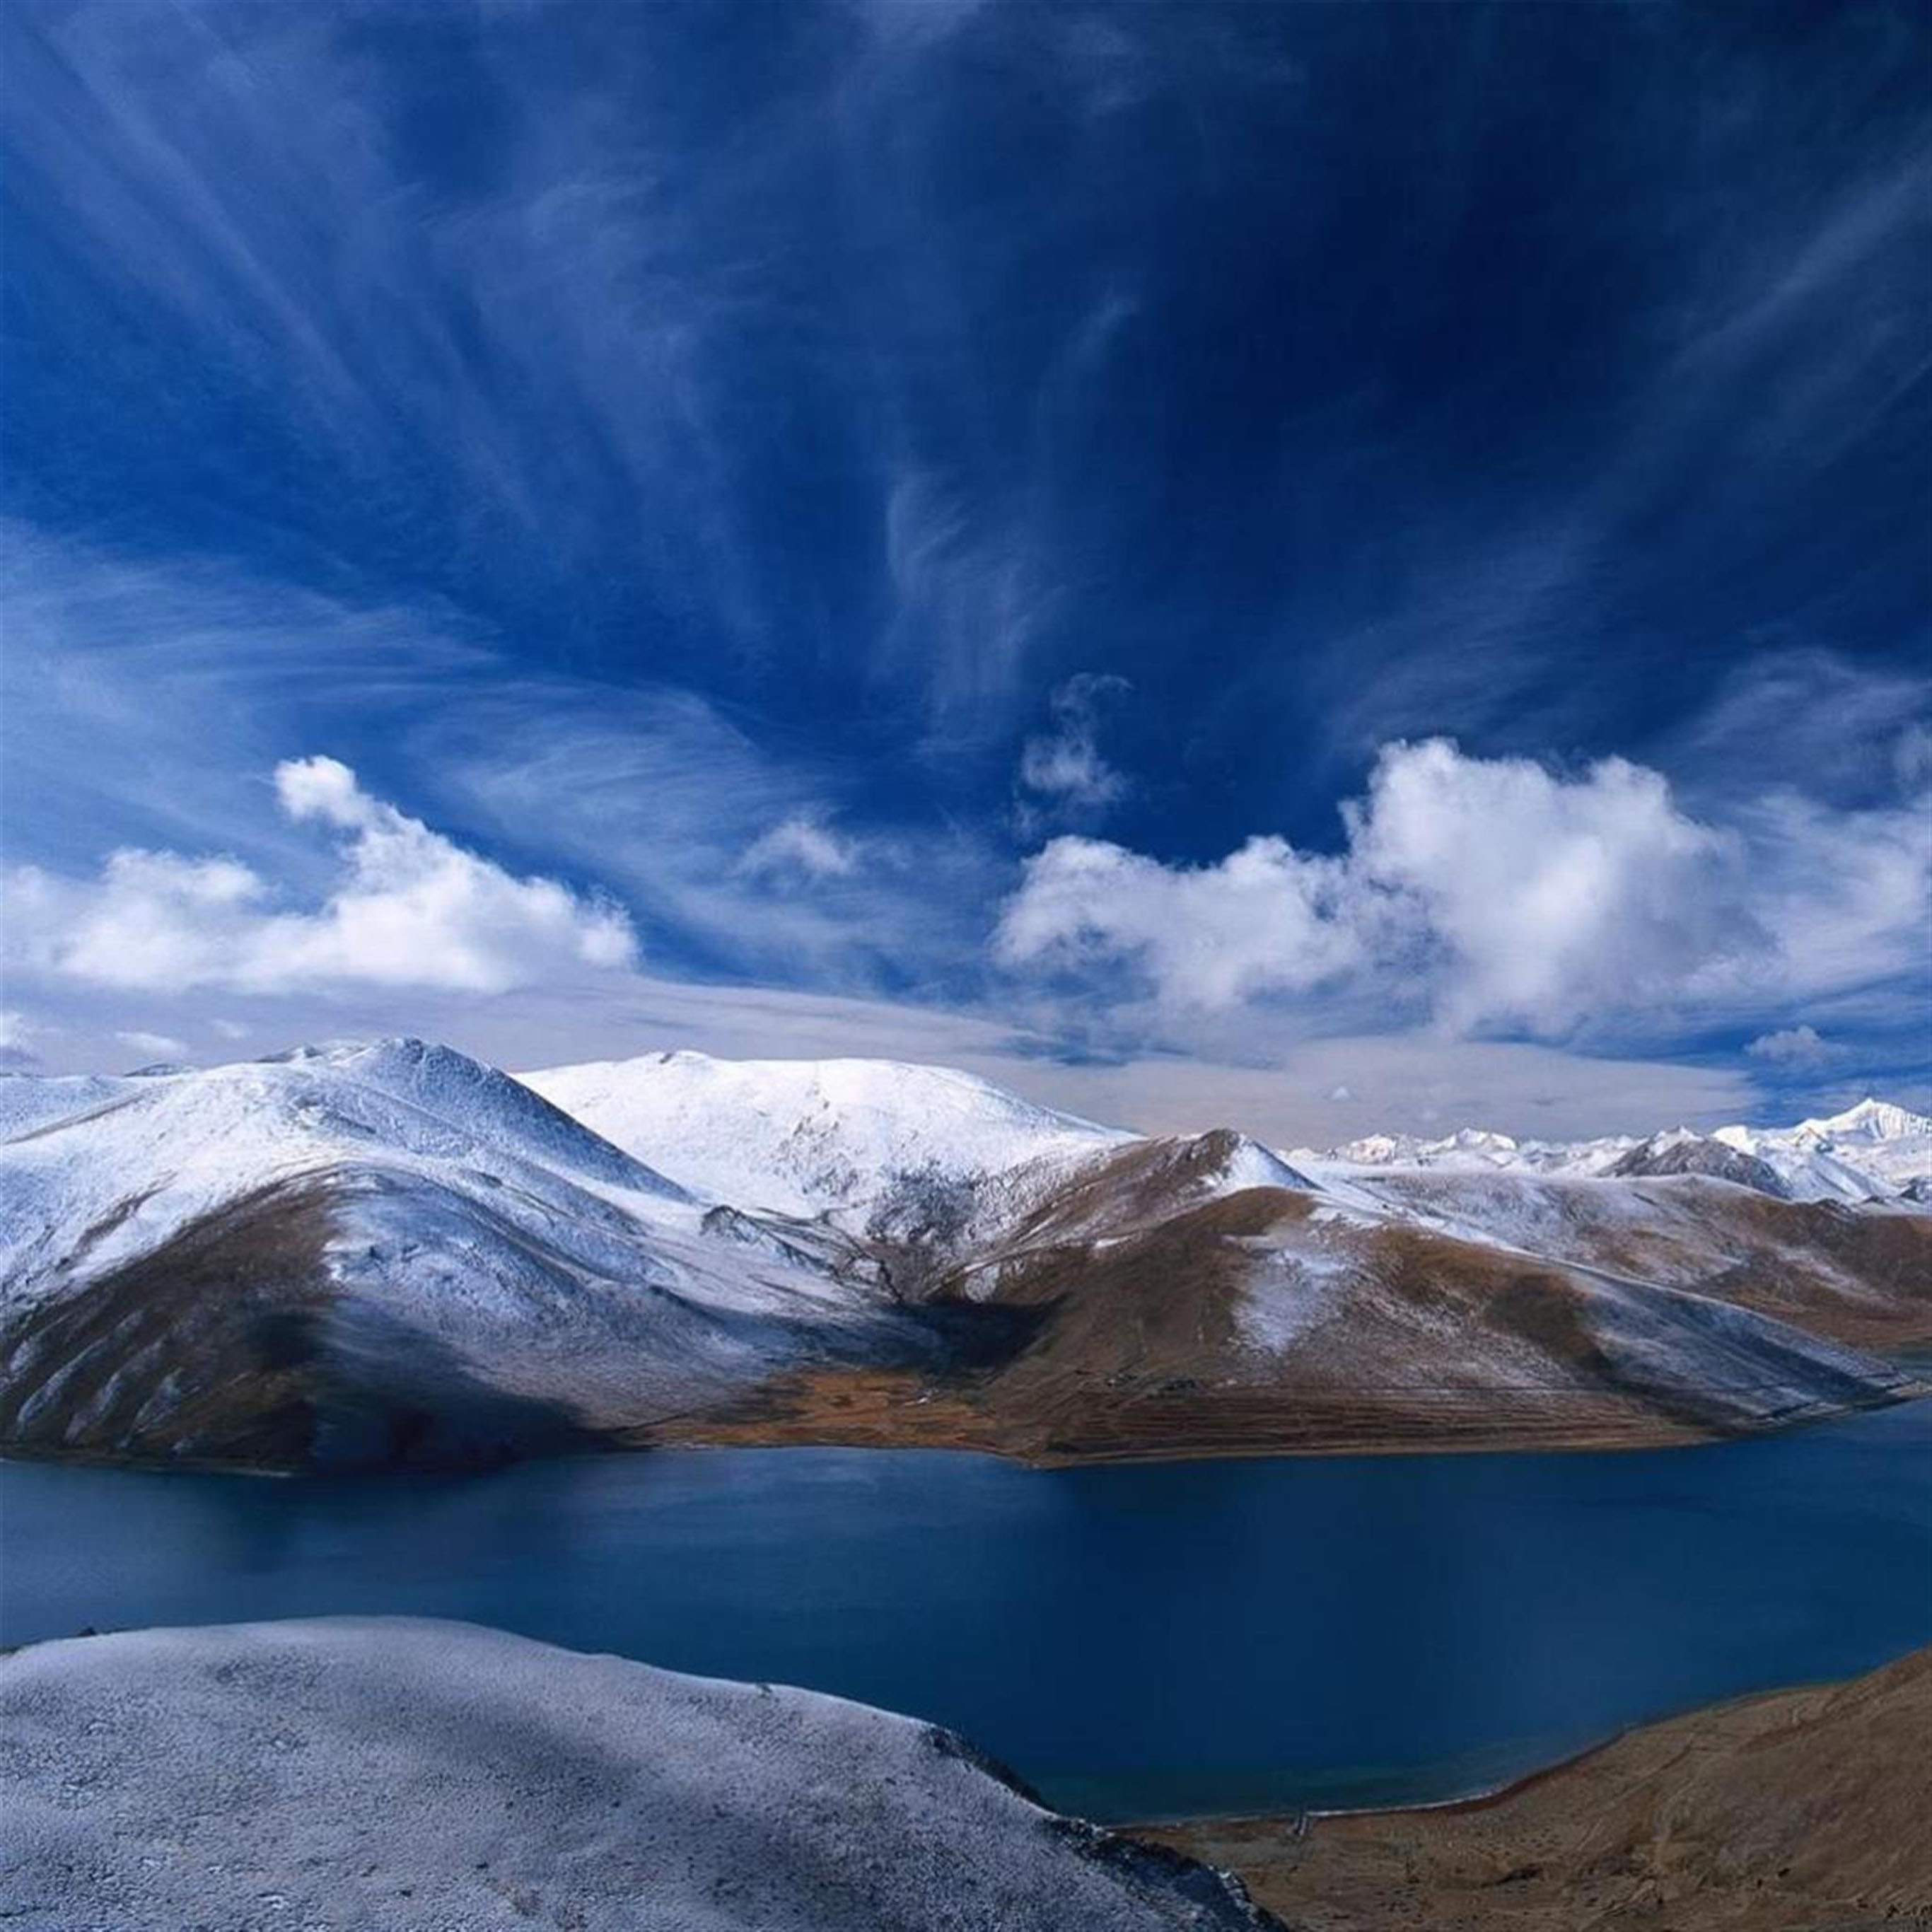 fond d'écran pour ipad pro 12.9,ciel,la nature,montagne,paysage naturel,bleu